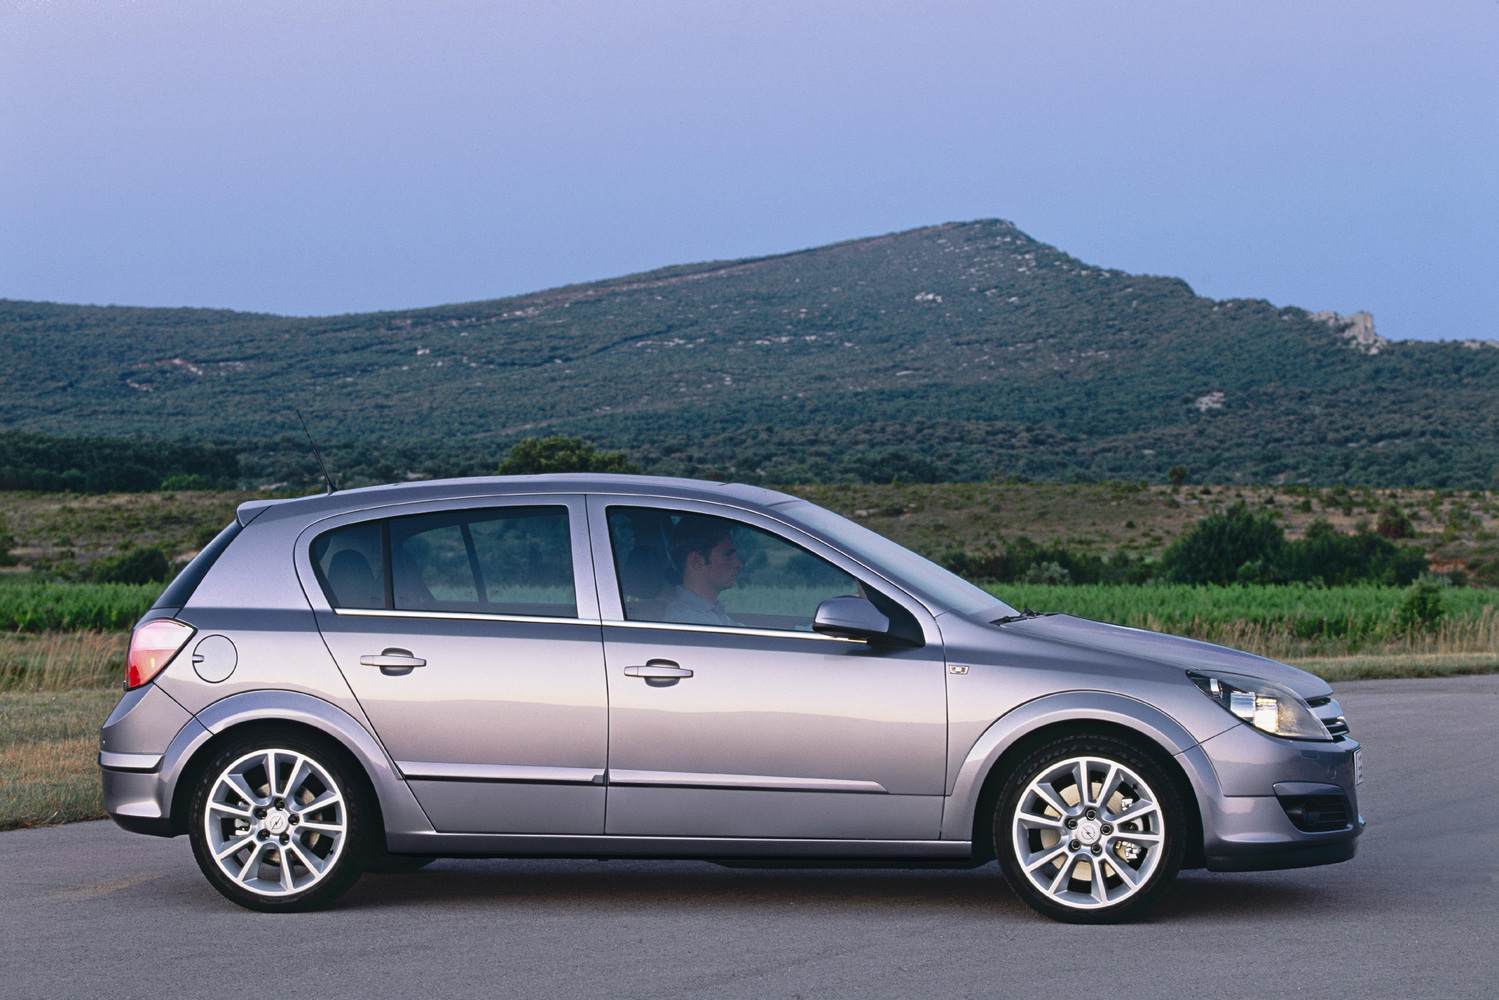 хэтчбек 5 дв. Opel Astra 2004 - 2006г выпуска модификация 1.2 AMT (90 л.с.)